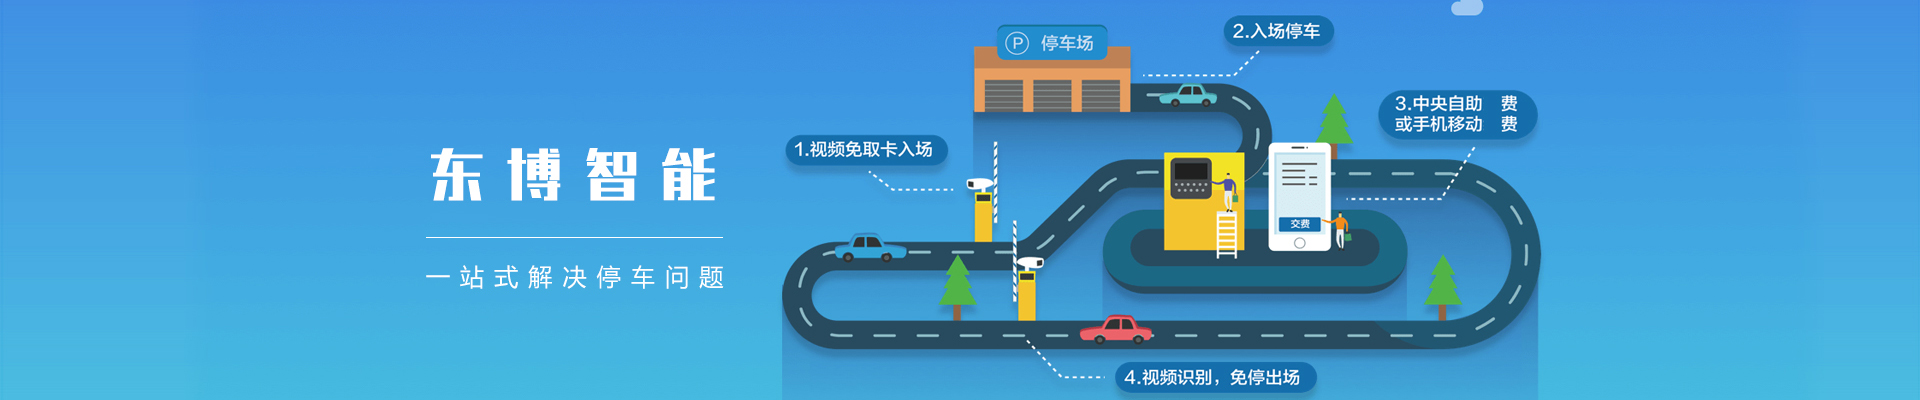 廣州智能停車管理